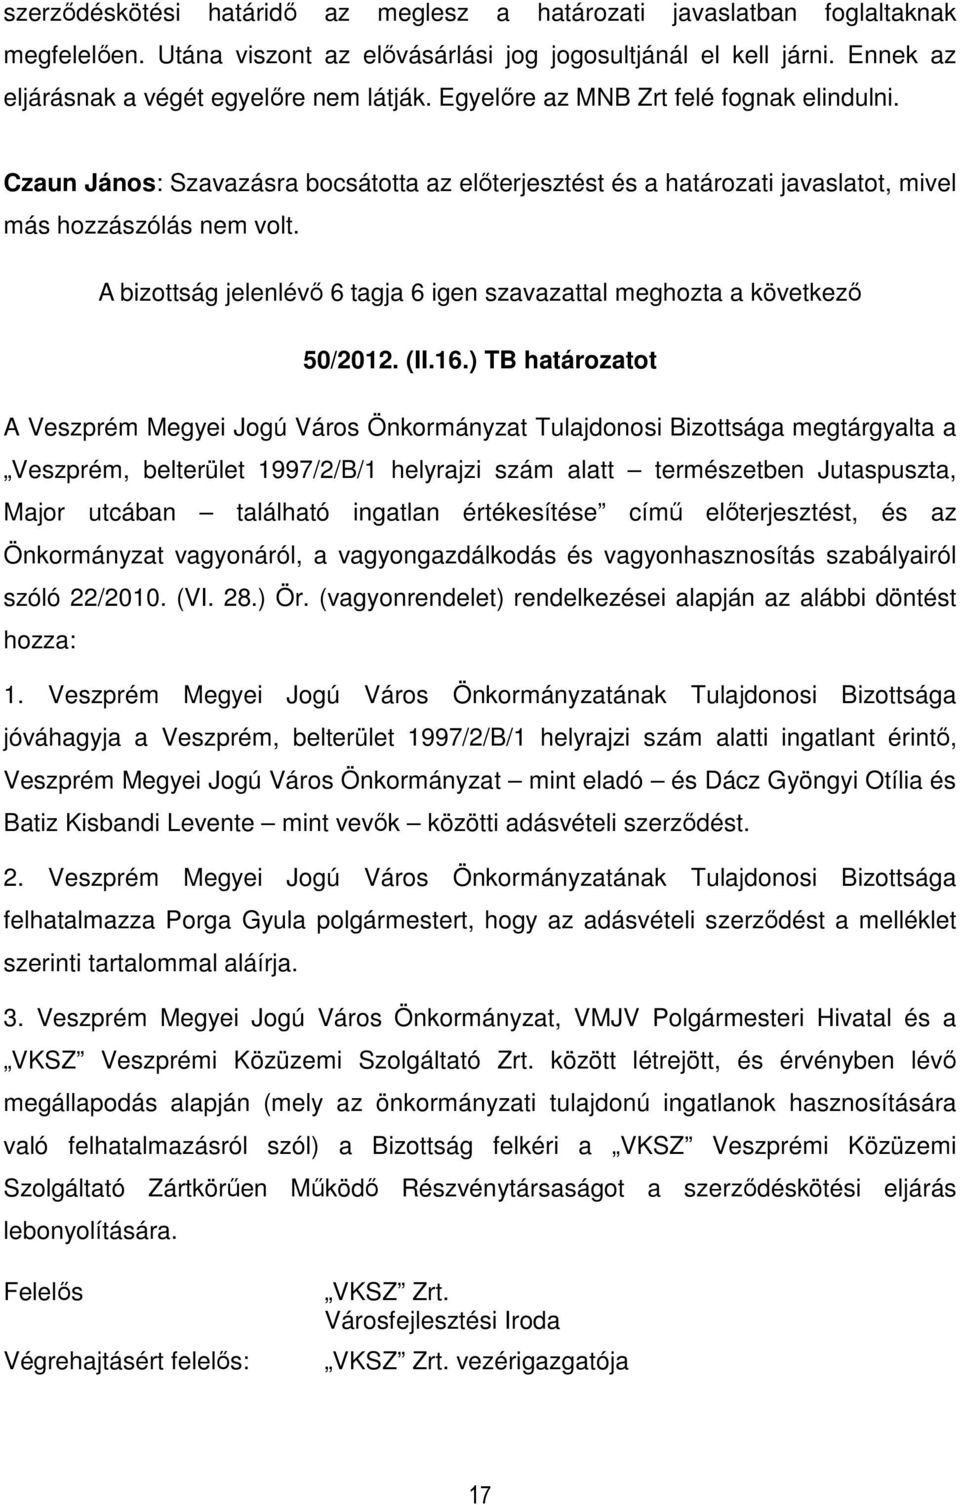 ) TB határozatot A Veszprém Megyei Jogú Város Önkormányzat Tulajdonosi Bizottsága megtárgyalta a Veszprém, belterület 1997/2/B/1 helyrajzi szám alatt természetben Jutaspuszta, Major utcában található